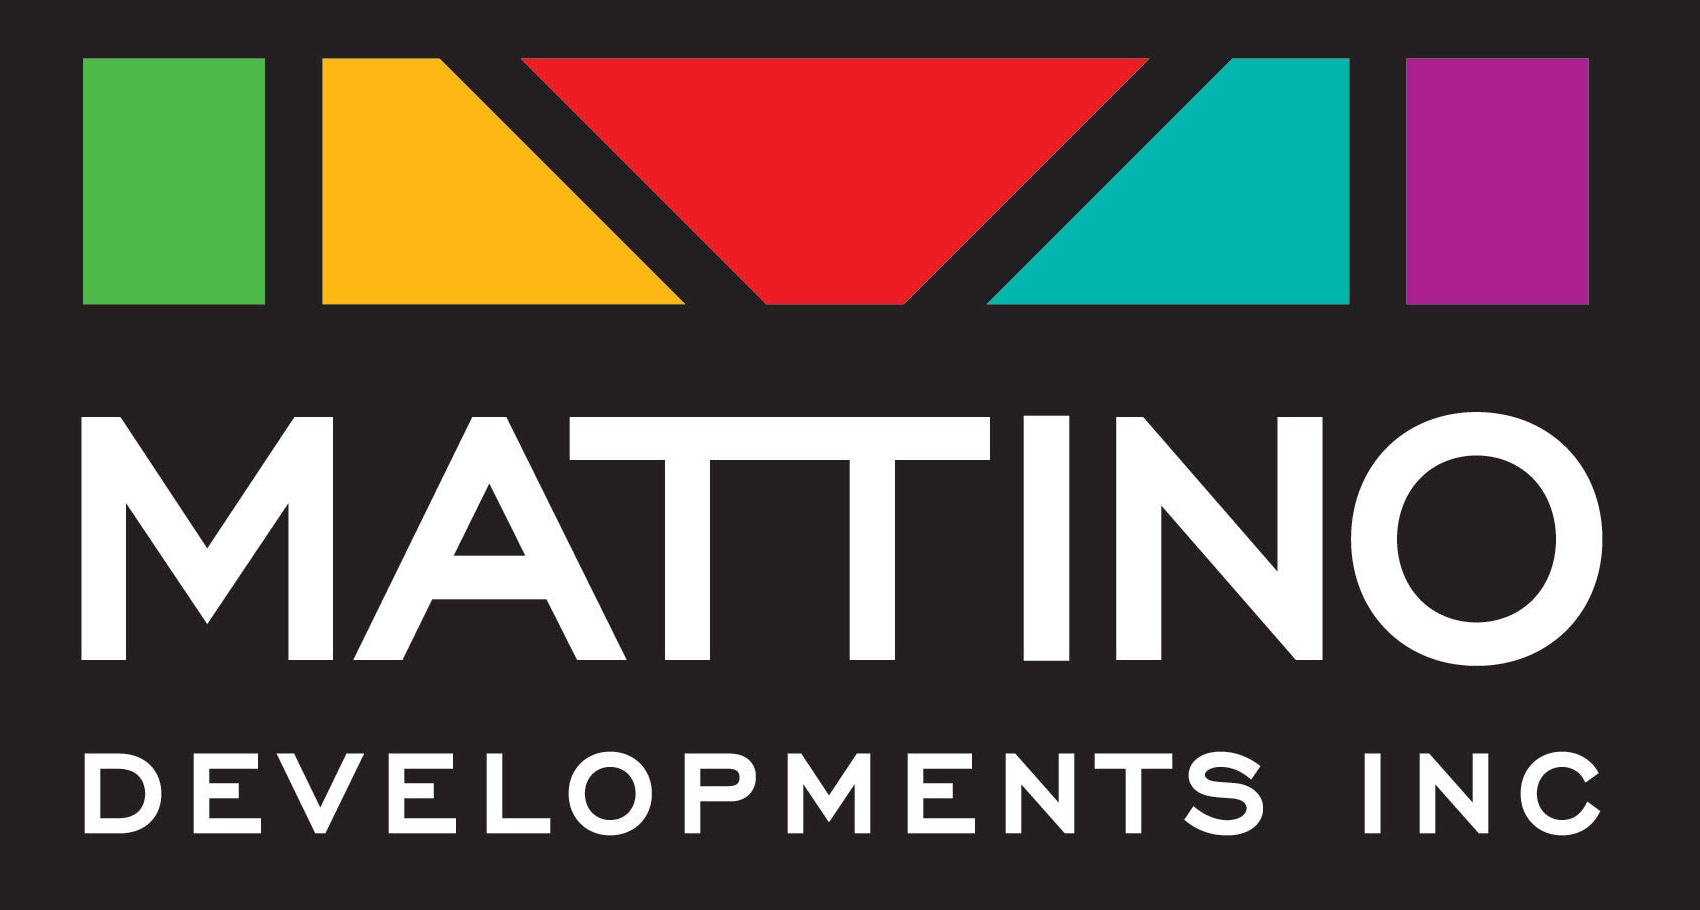 Mattino Developments